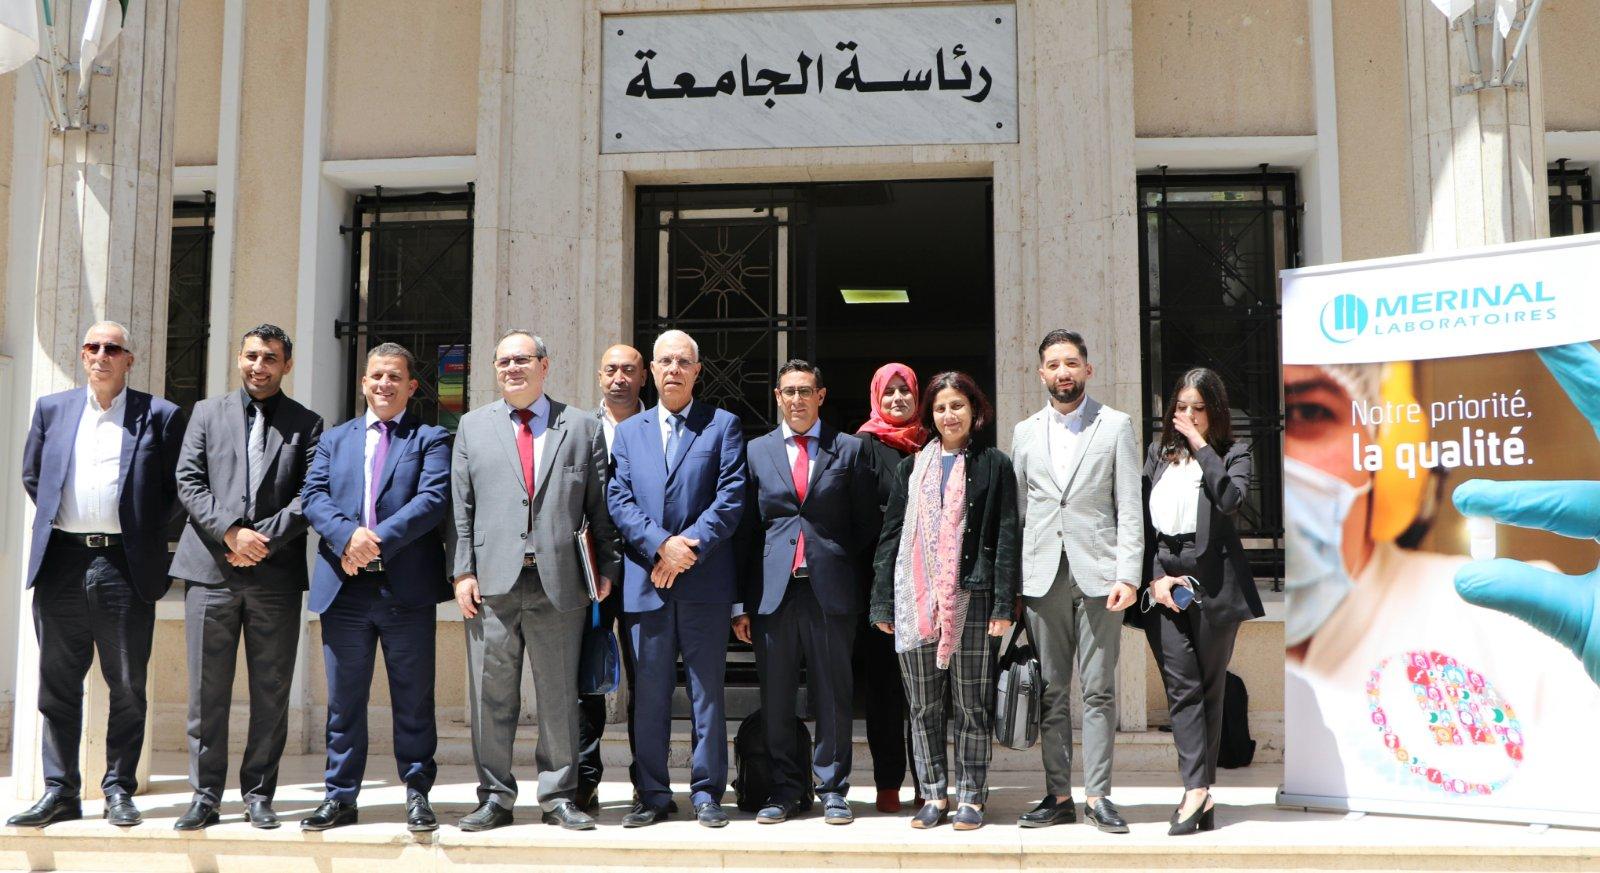 Signature d'un accord cadre entre l'université Alger 1 et les laboratoires Merinal